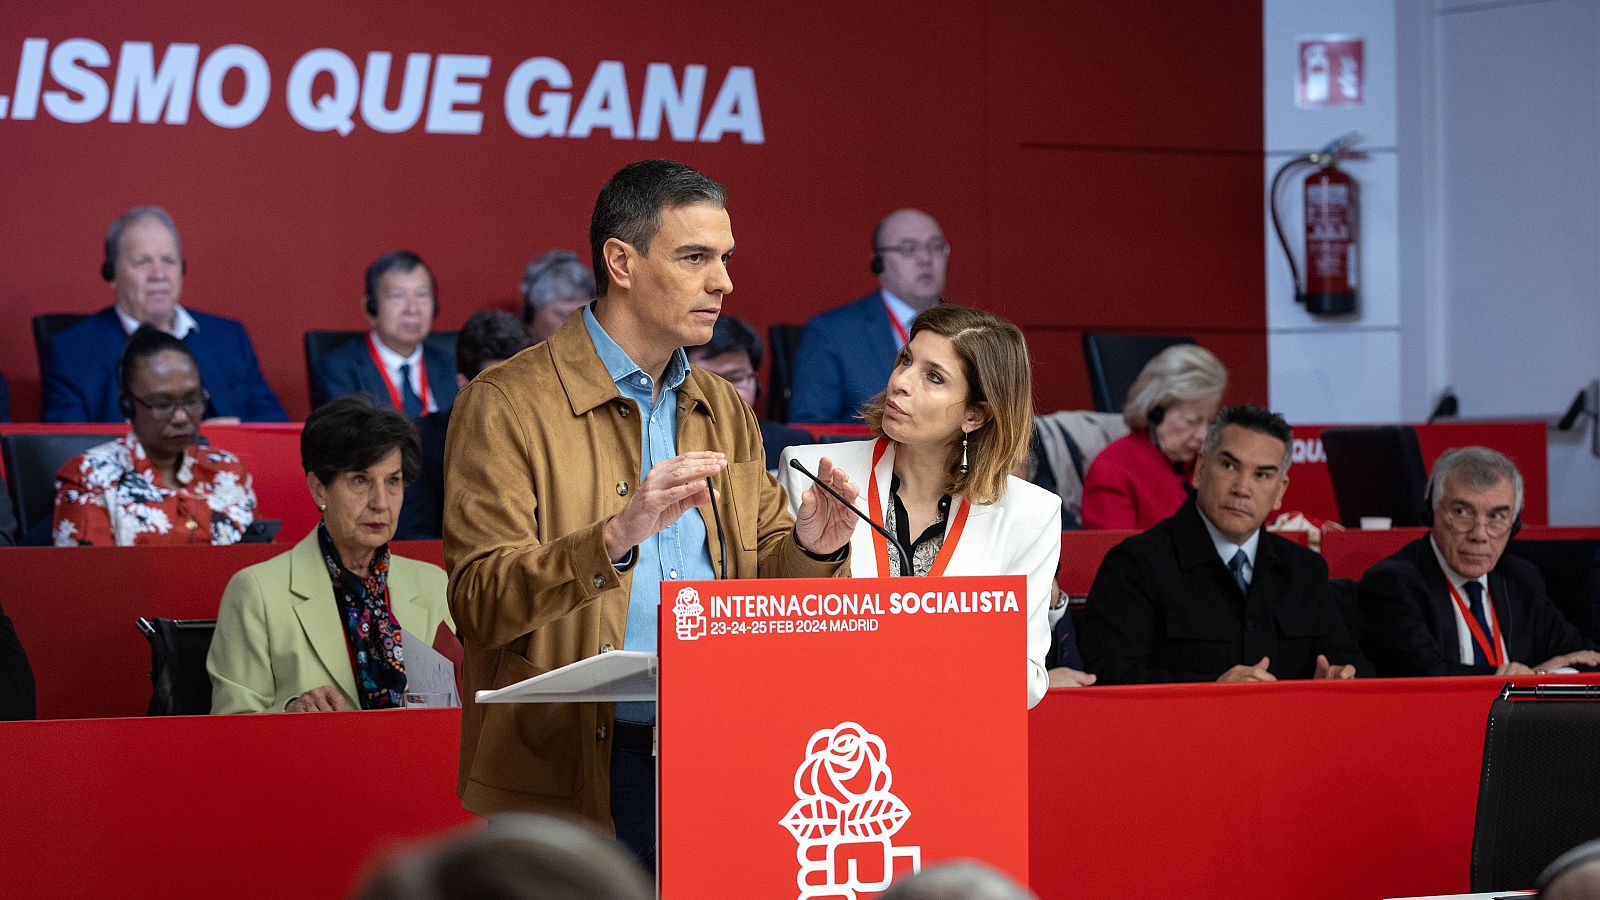 El presidente del gobierno y secretario general del PSOE, Pedro Sánchez, interviene en la Ejecutiva Federal